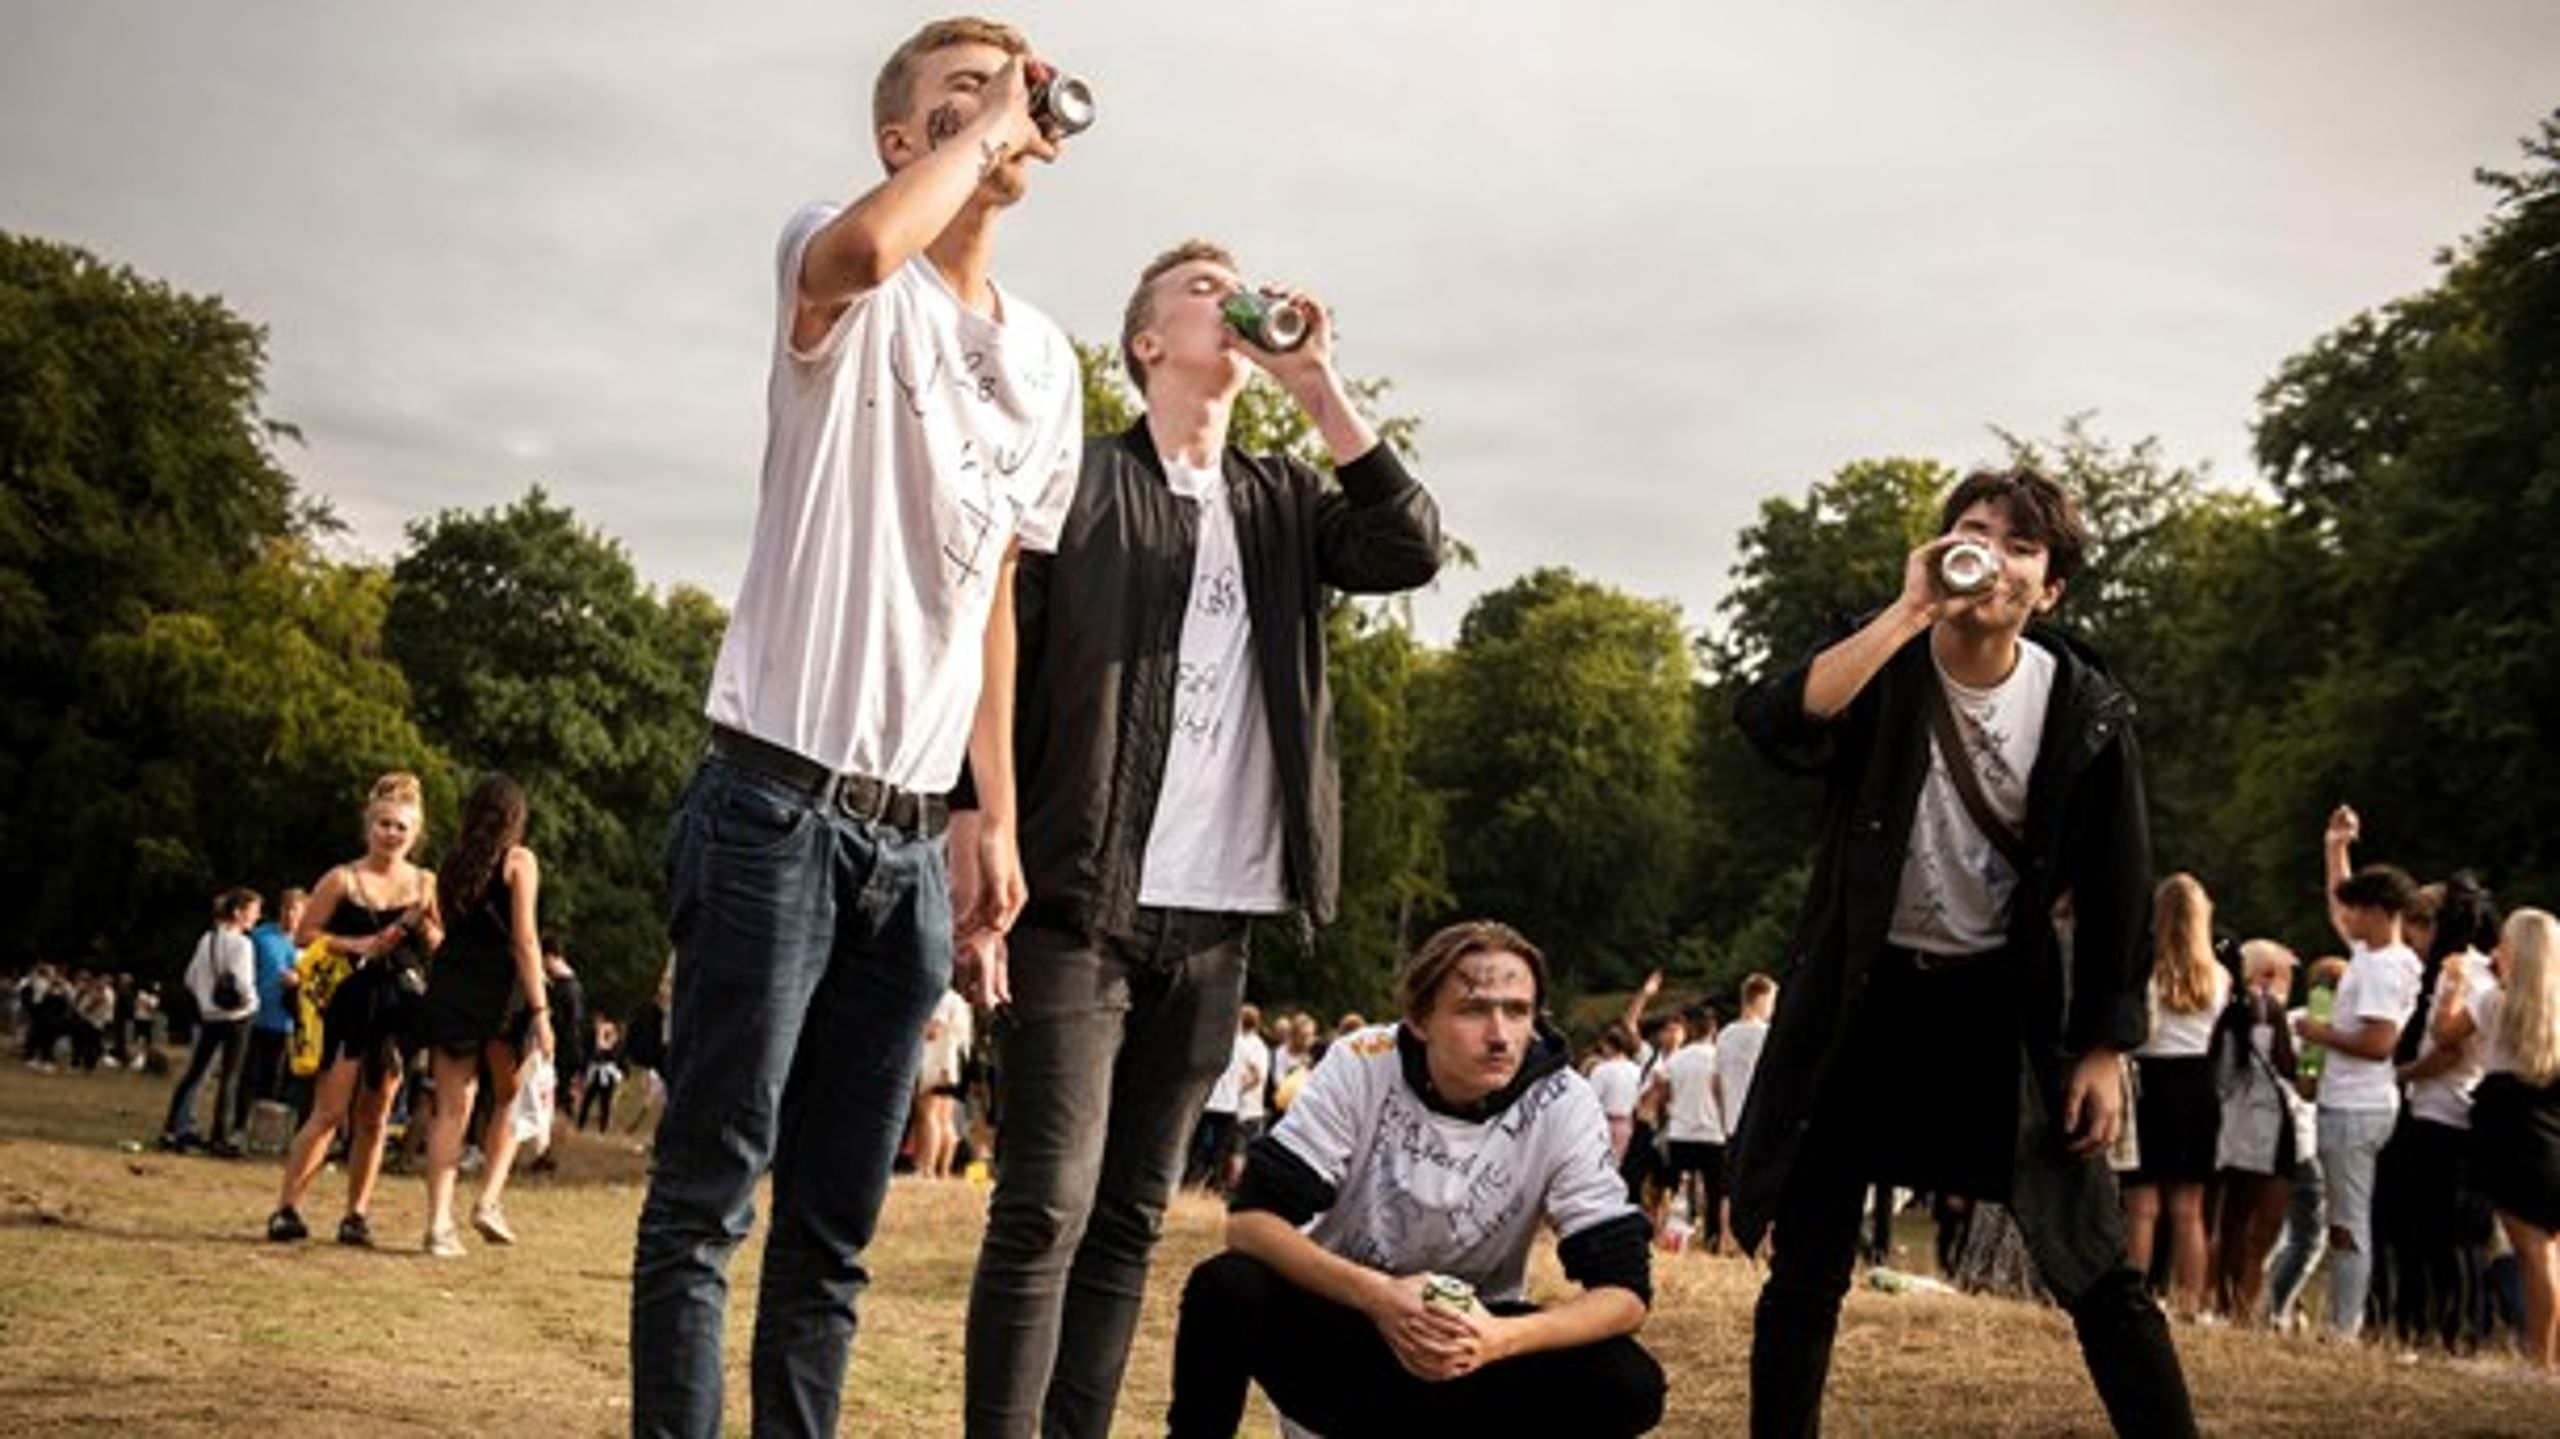 Sundhedsstyrelsen varsler et opgør med danske unges drukkultur, og eksperter anbefaler at sætte aldersgrænsen for køb af alkohol op fra 16 til 18 år. Hvad mener unge om det? (Arkivfoto fra "puttefest" i Dyrehaven i 2018).